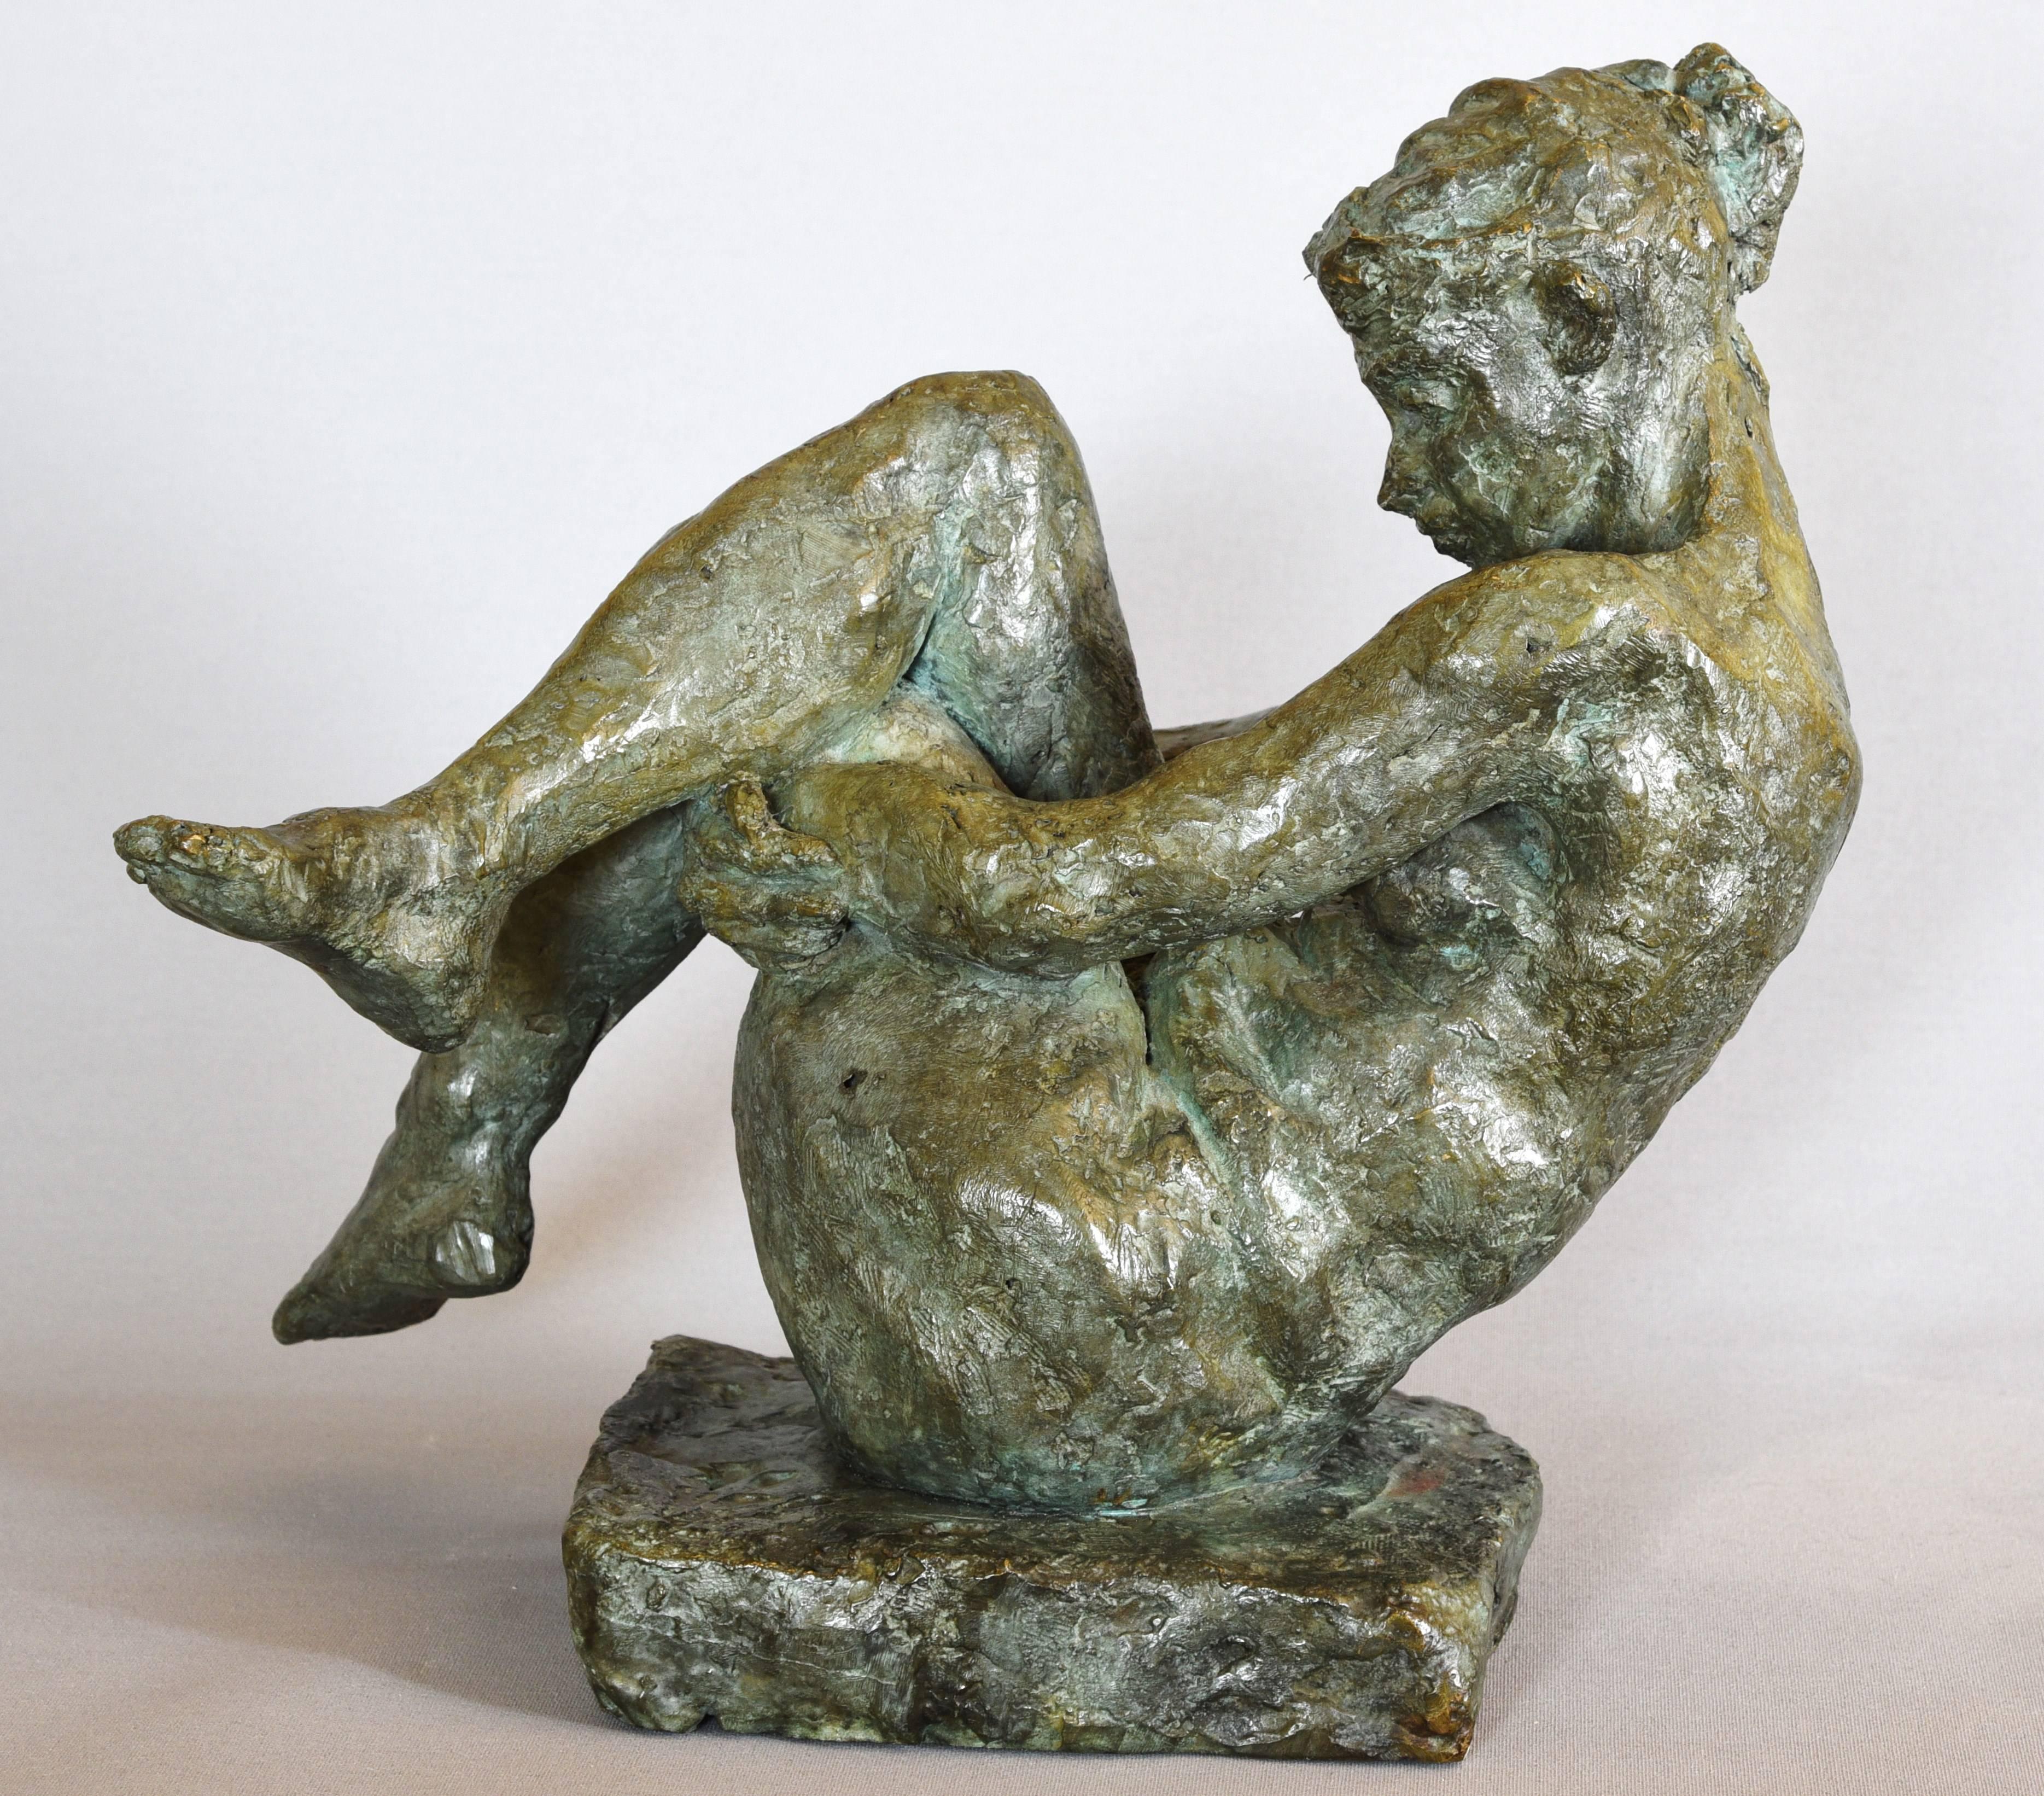 YBAH Nude Sculpture - Nude